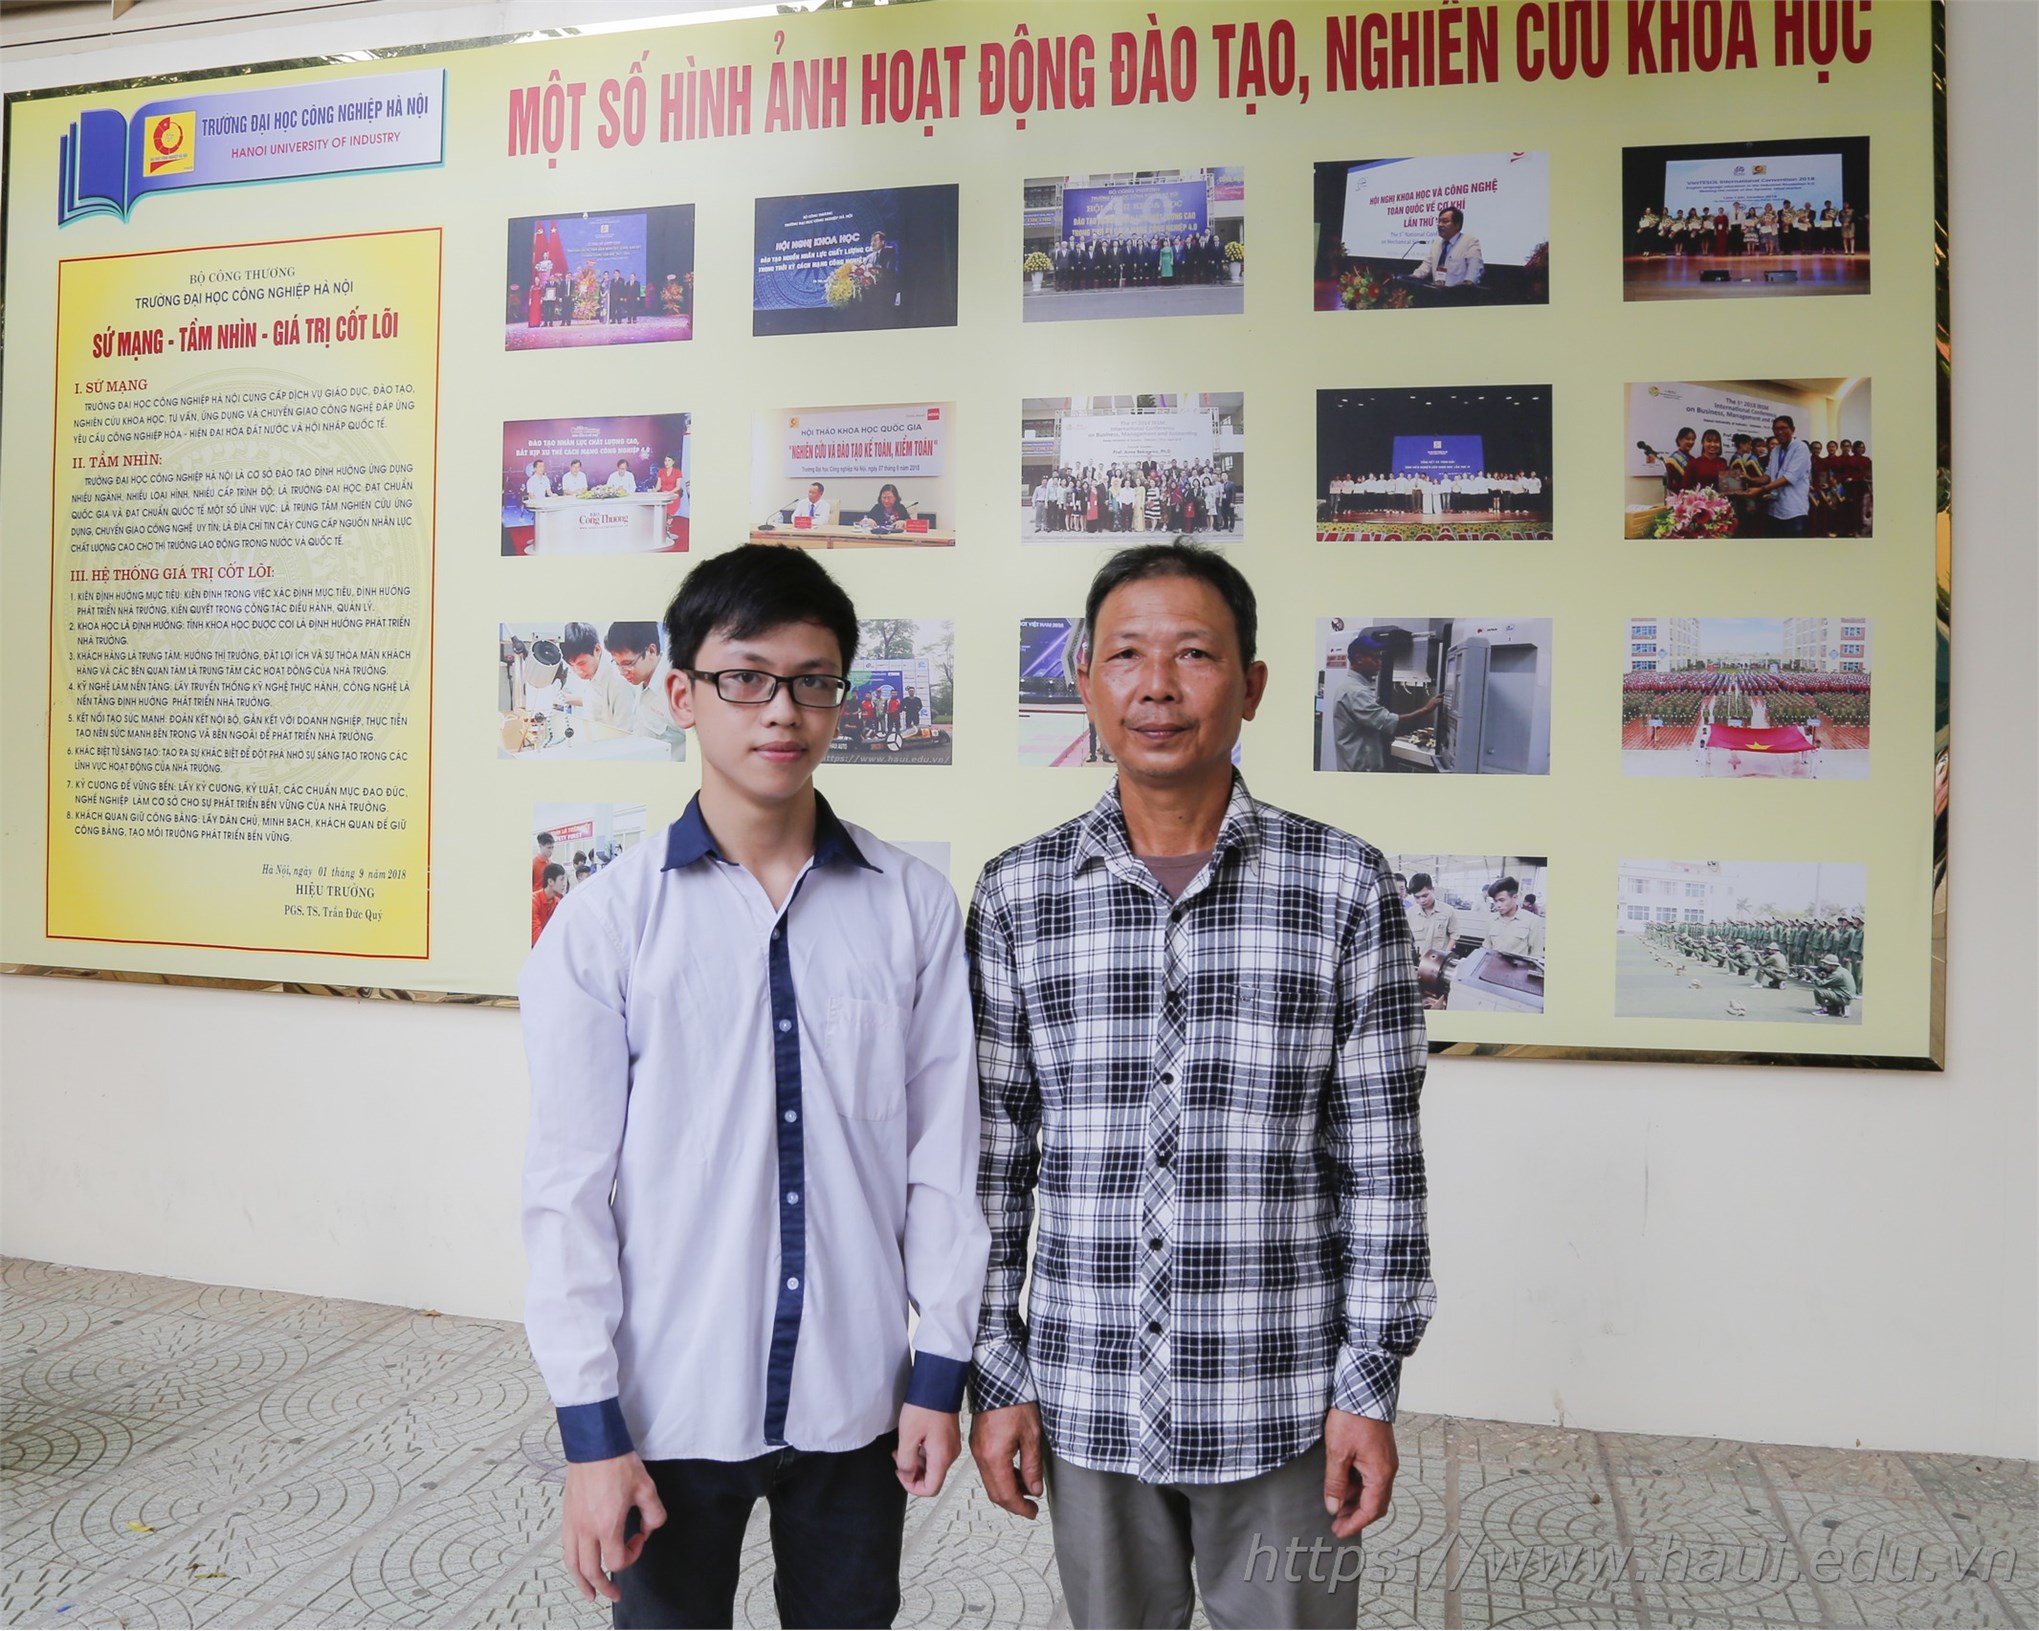 Thí sinh xác nhận nhập học tại Đại học Công nghiệp Hà Nội 2019